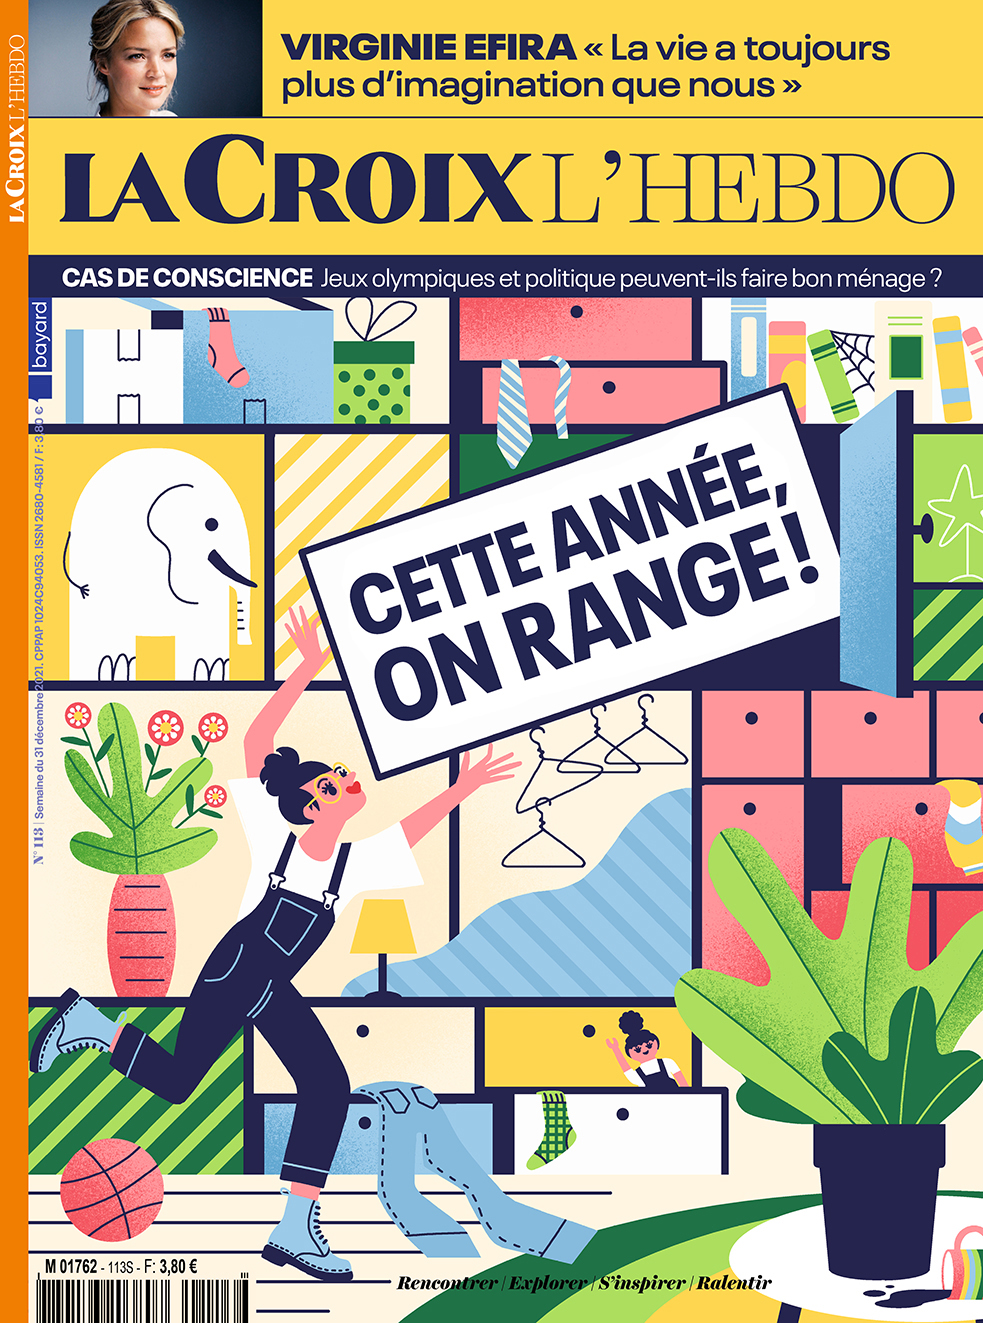 Clod illustration La Croix l'Hebdo 113 - Cette année on range